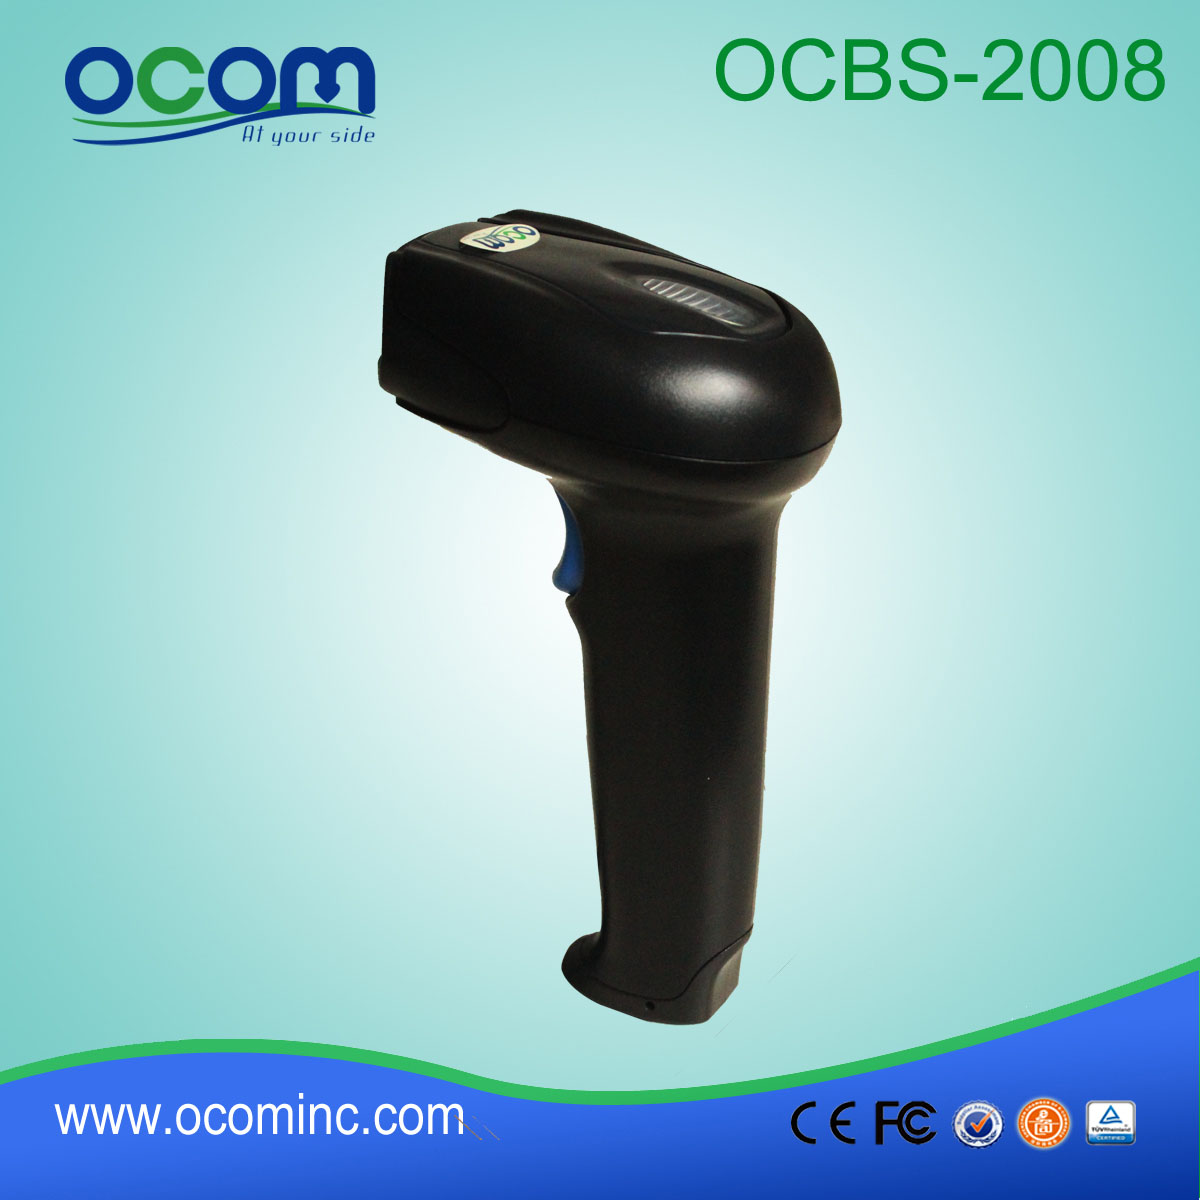 OCBS-2008 Micro USB Omnidirectional skanera kodów kreskowych dla supermarketów